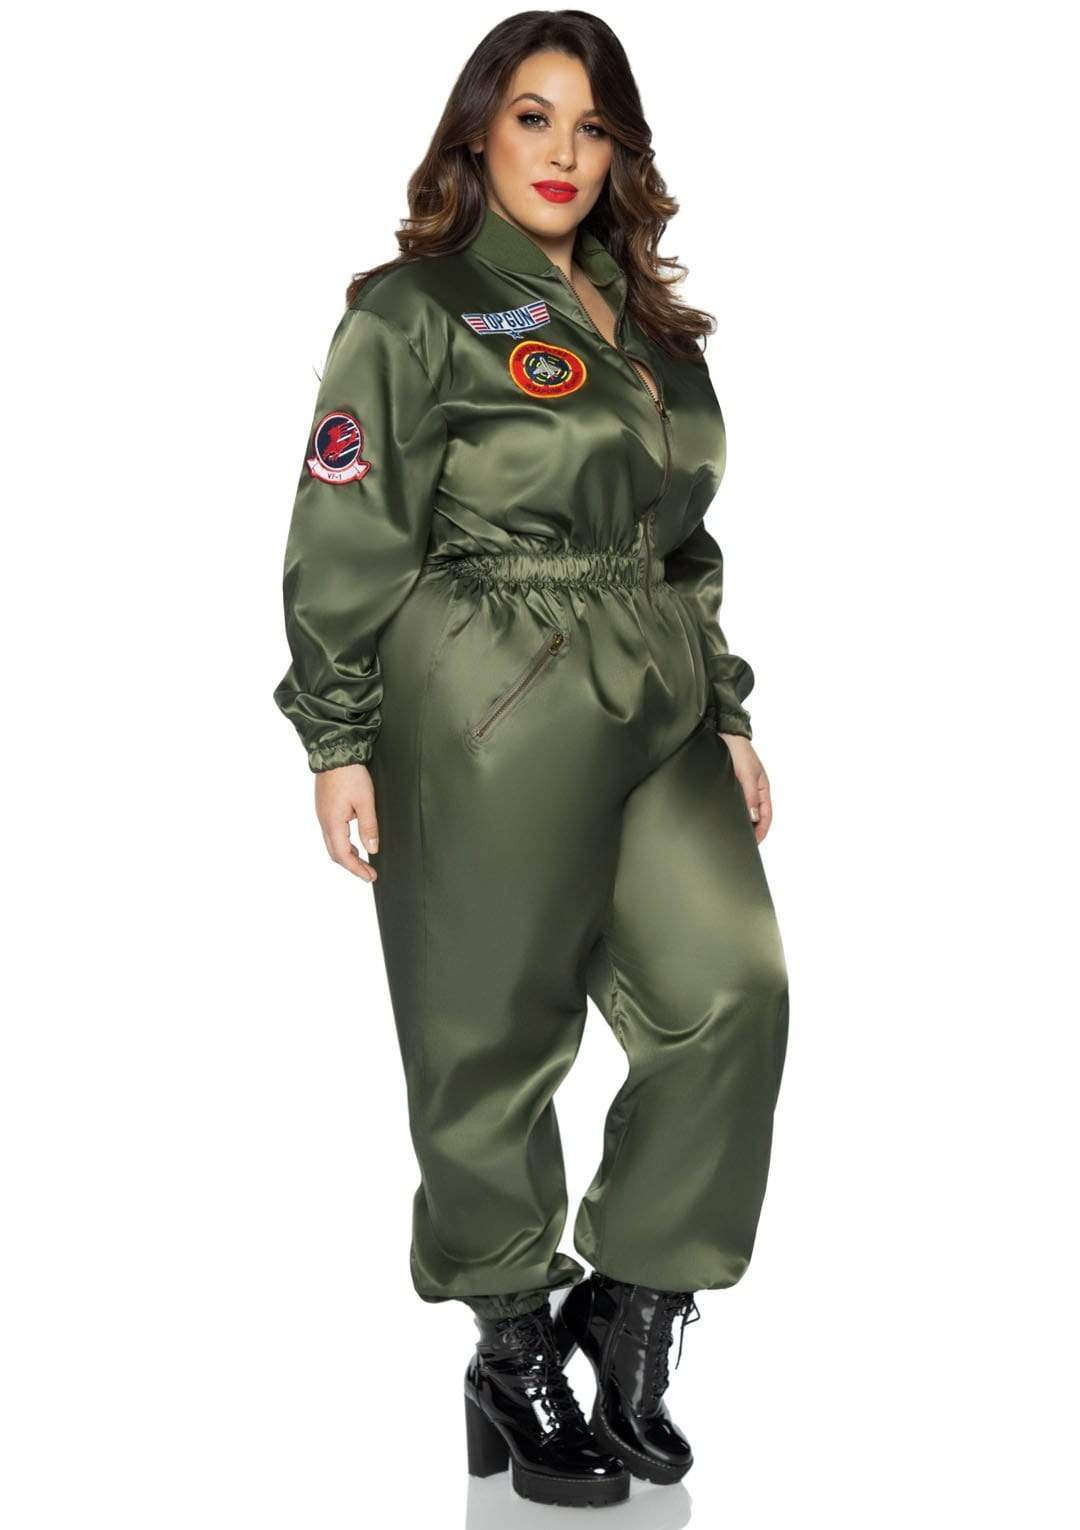 Top Gun Parachute Flight Suit with Maverick and Goose Name Badges